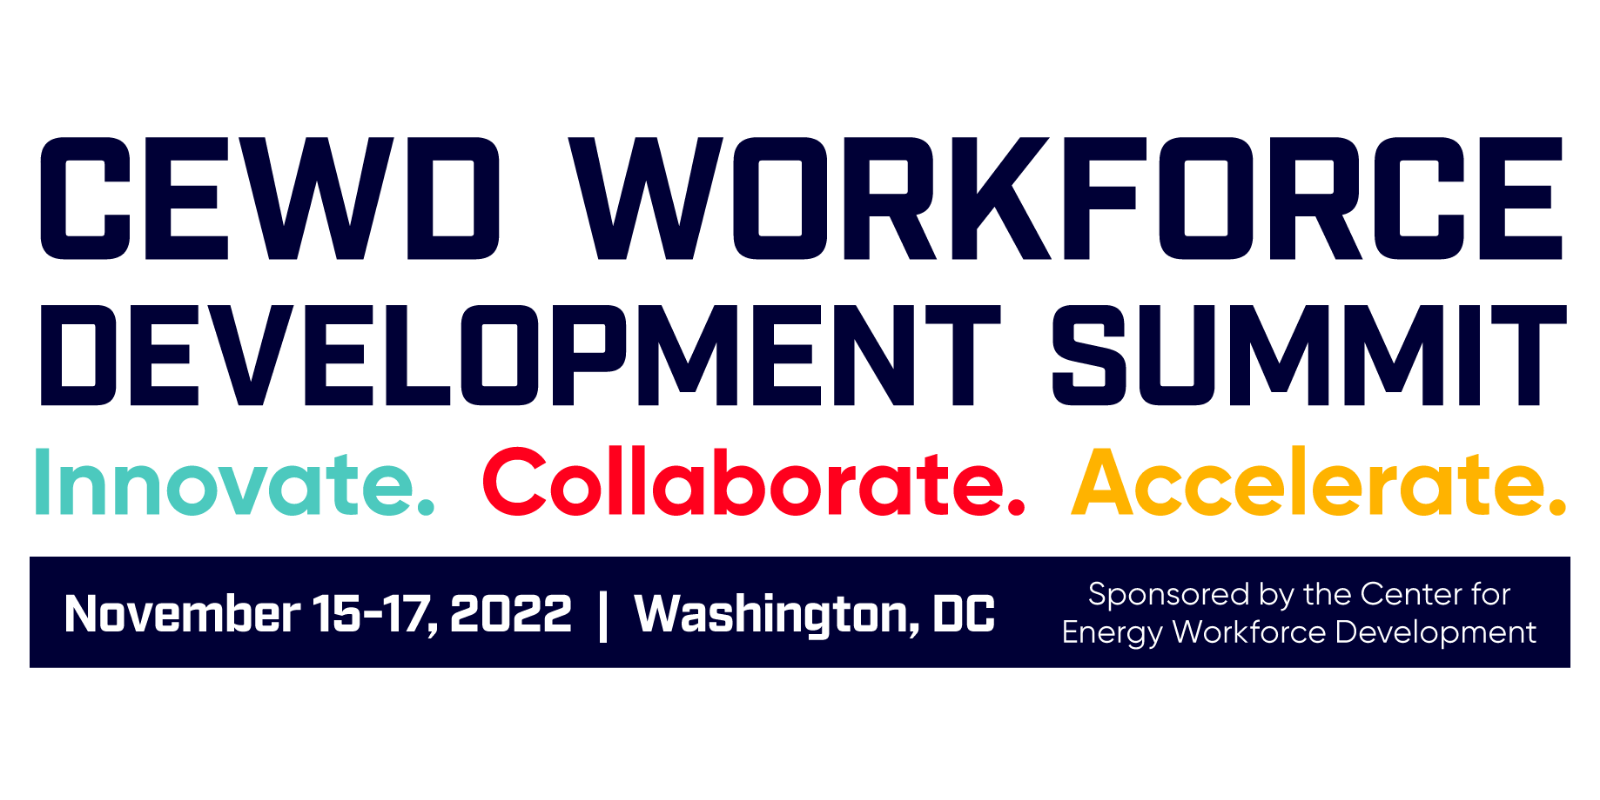 Annual Workforce Development Summit